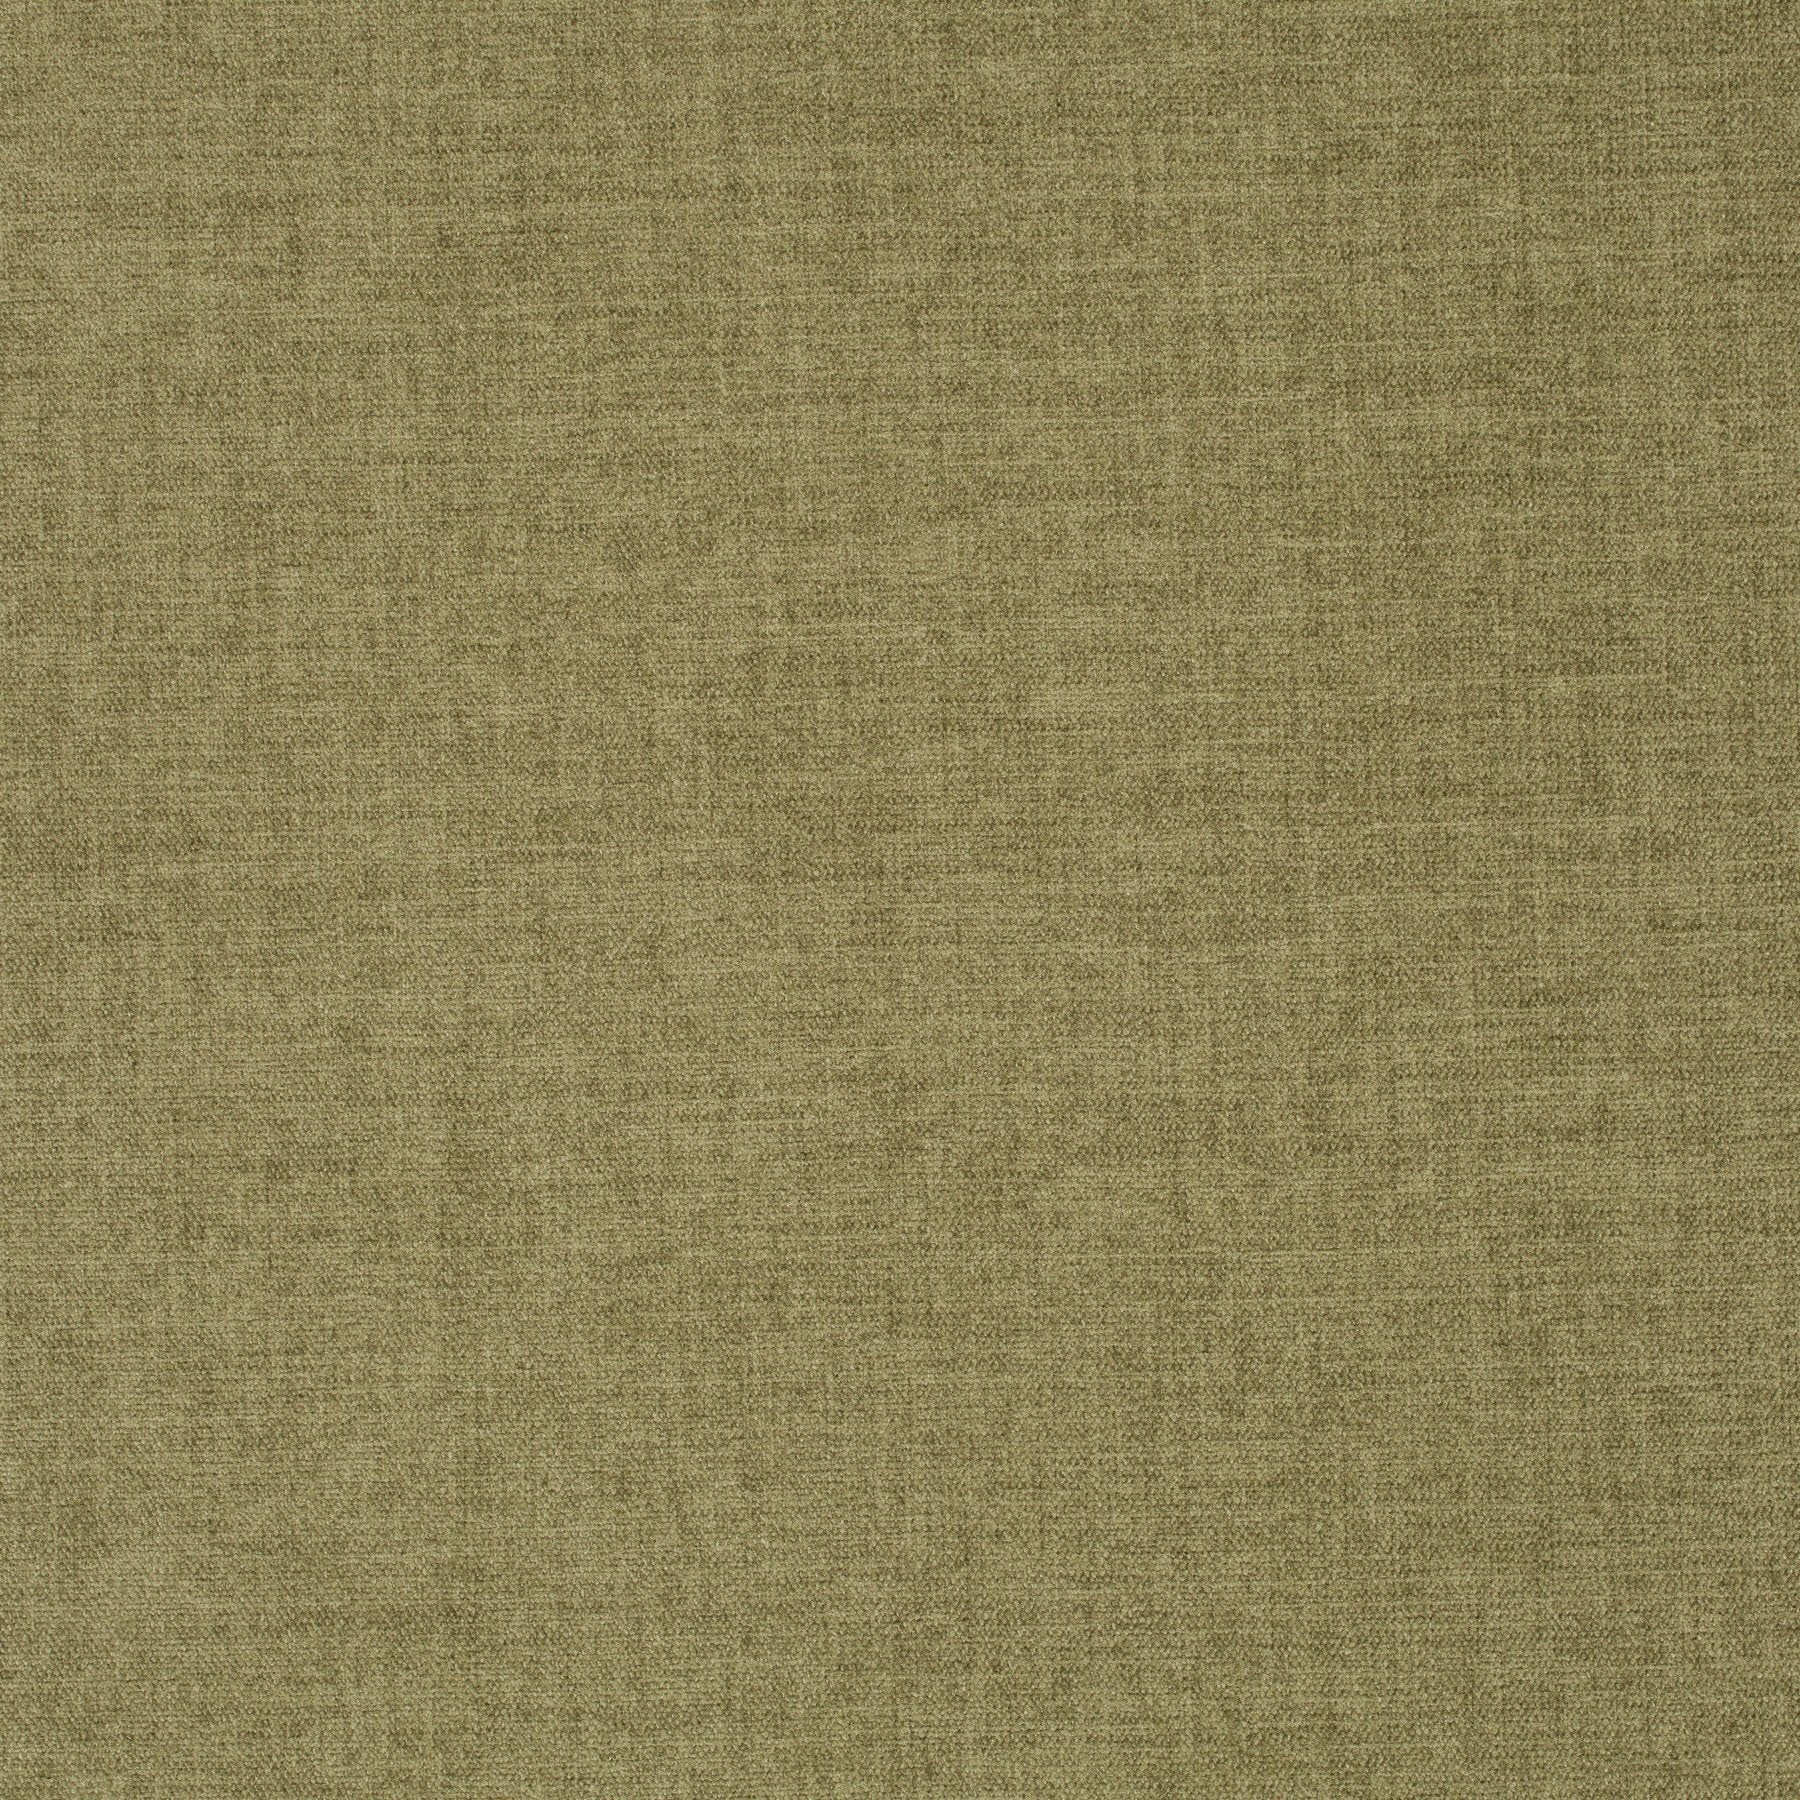 Chenillo 1-1281-131 Fabric